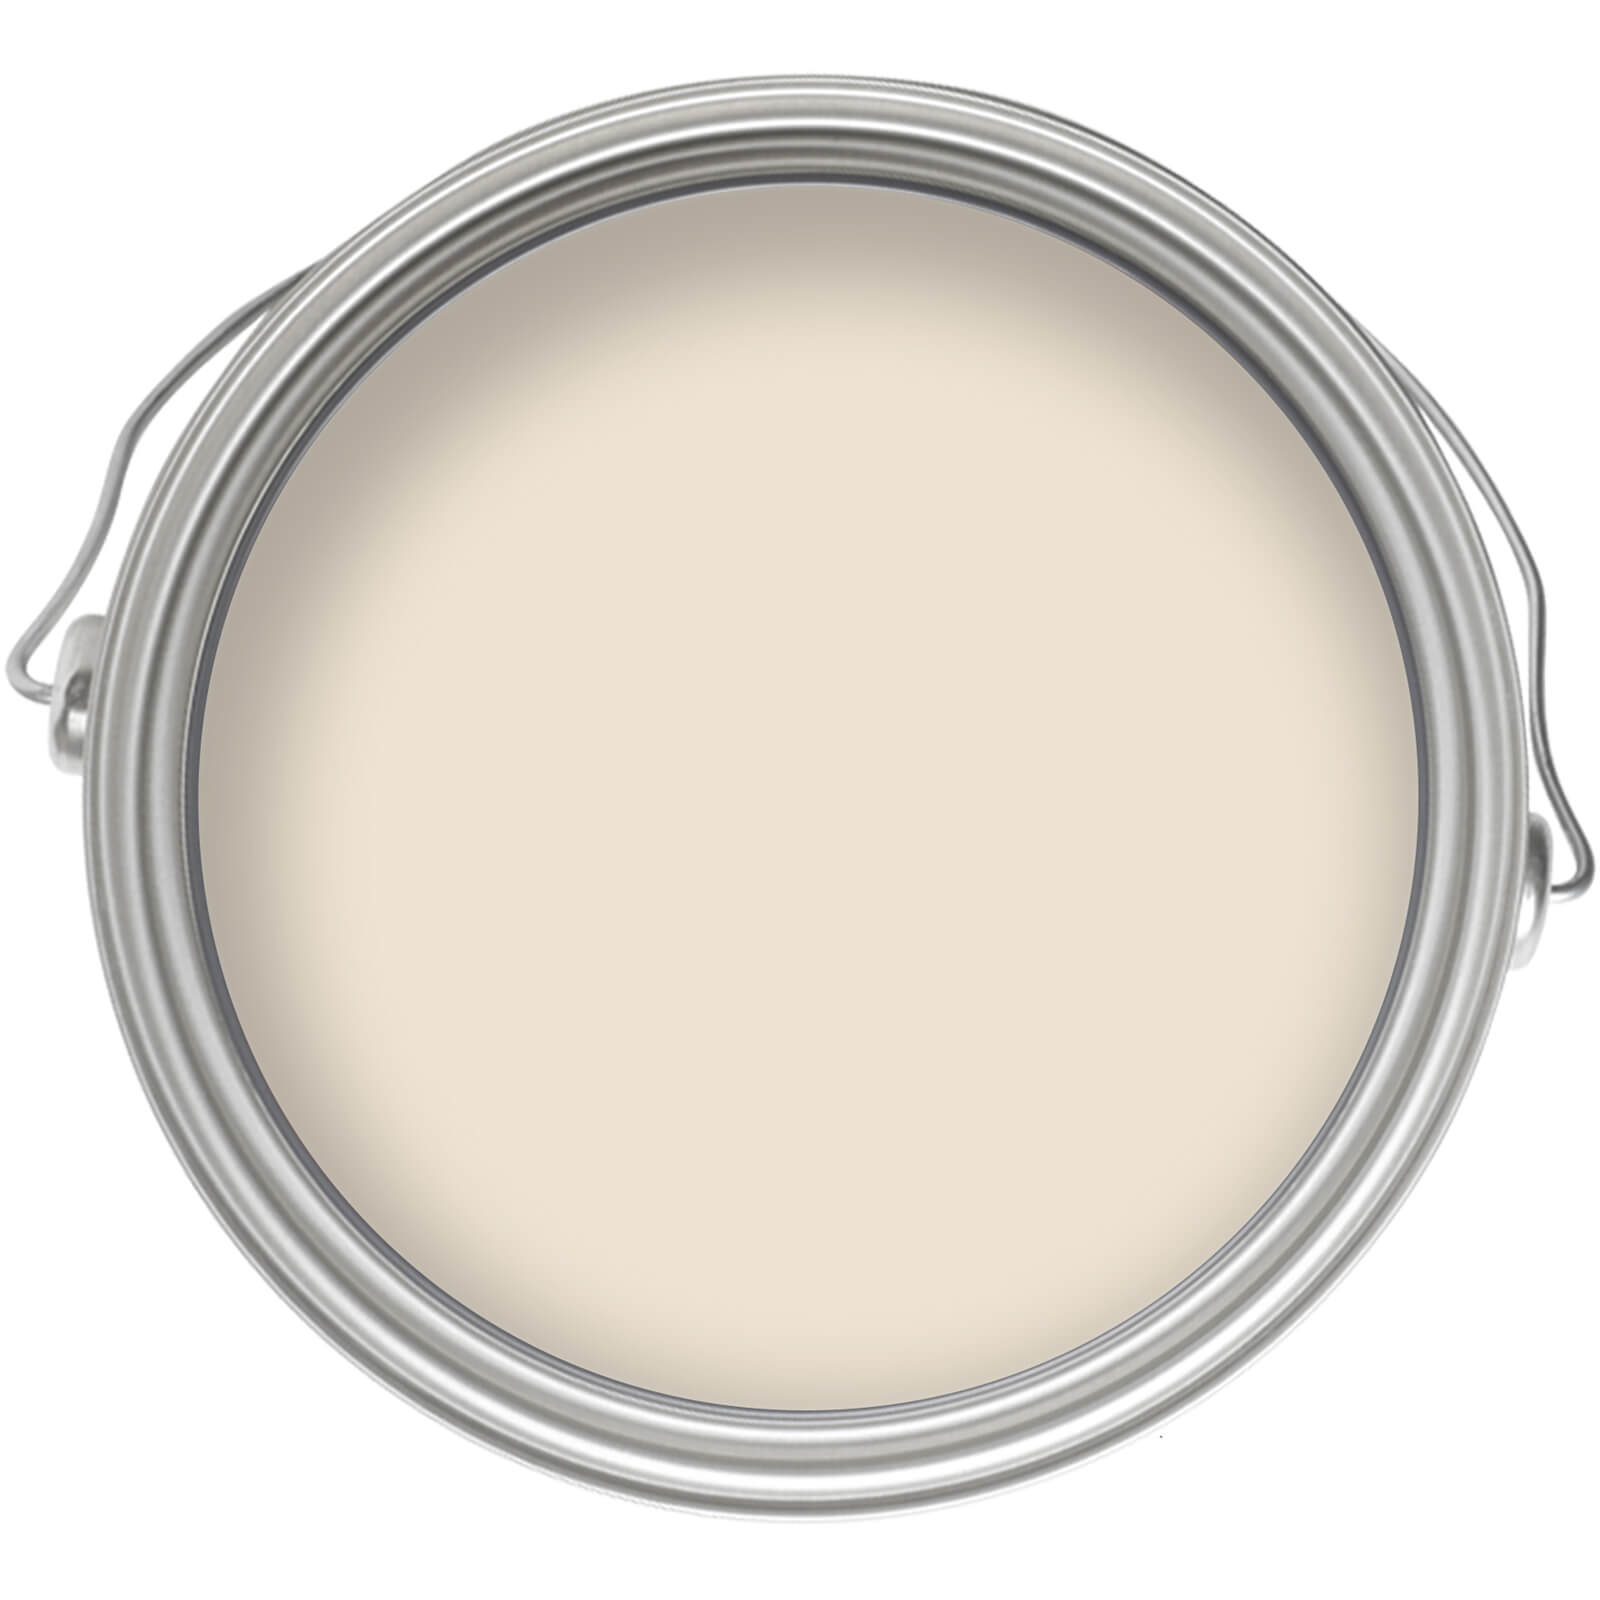 Homebase Tough & Durable Matt Emulsion Paint Biscuit - 2.5L